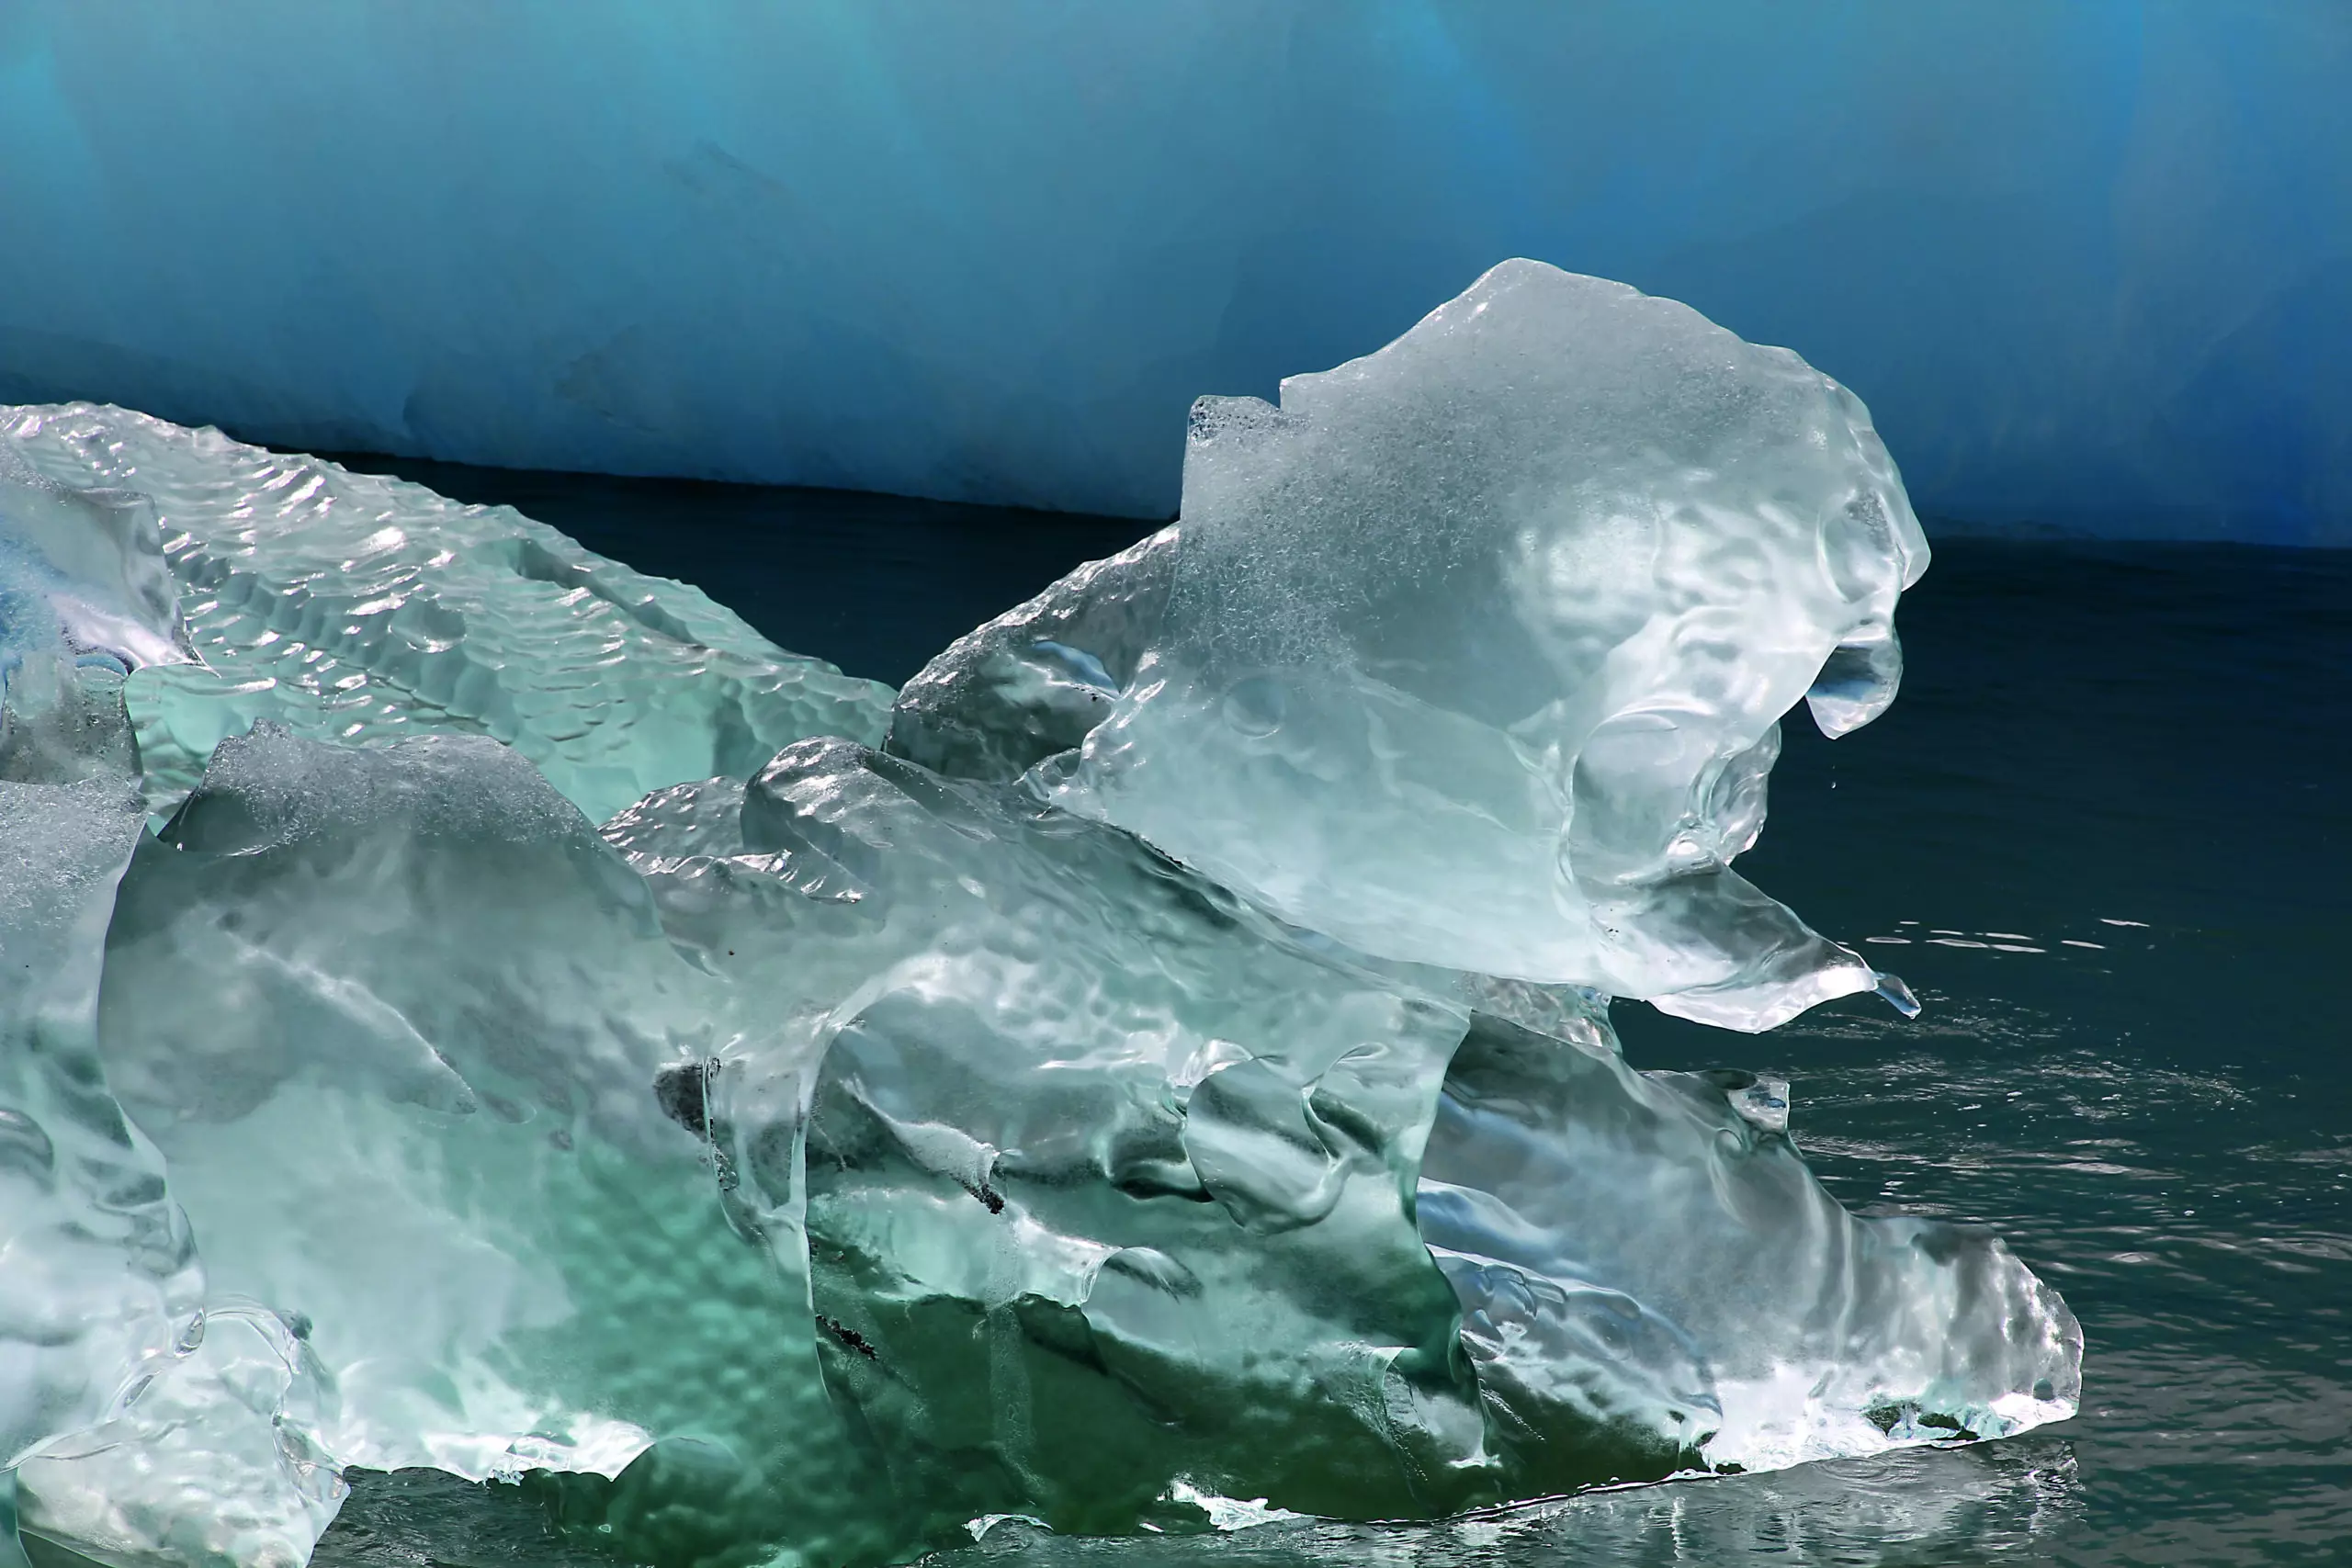 Wandbild (2781) ice bucket 1 präsentiert: Wasser,Details und Strukturen,Landschaften,Schnee und Eis,Gewässer